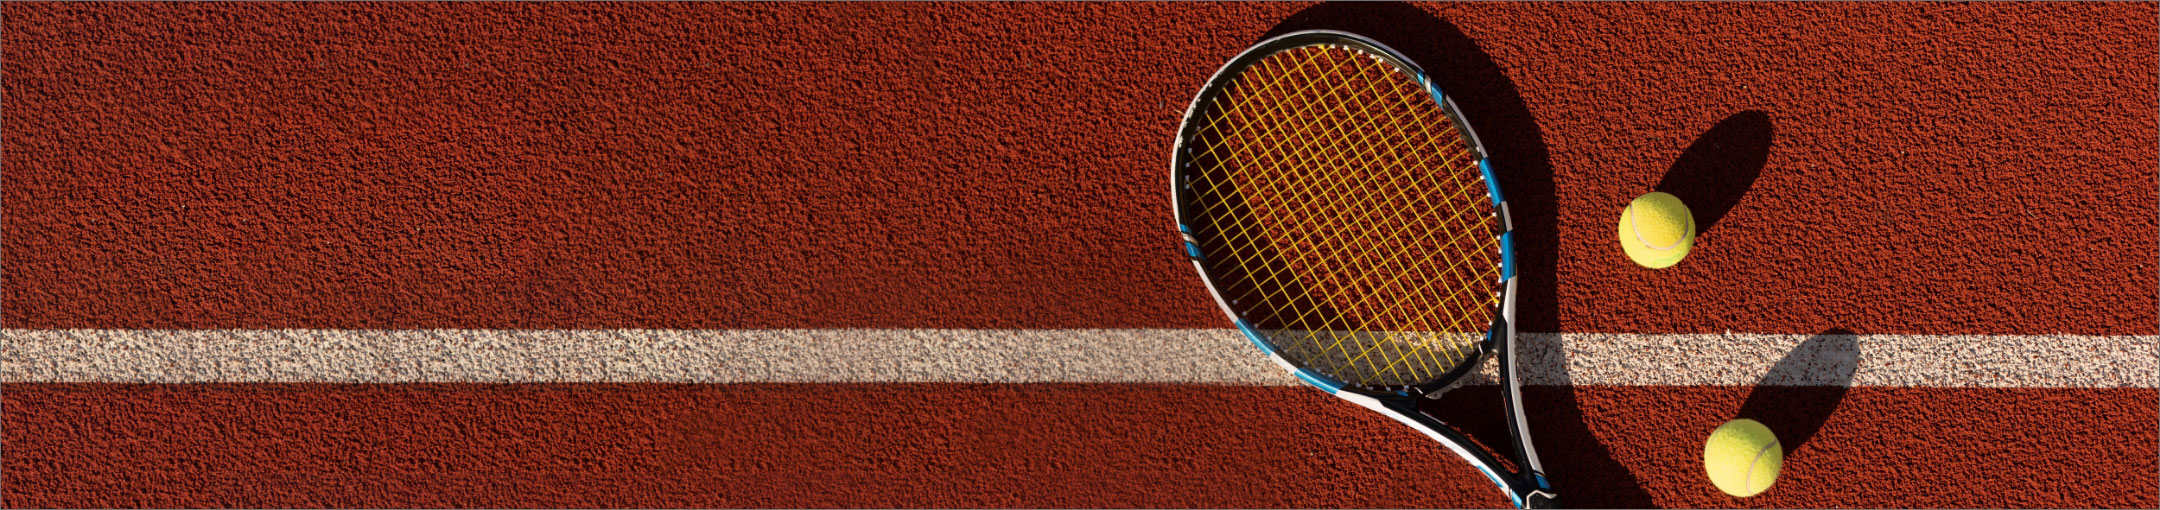 a tennis racquet and tennis balls on a court